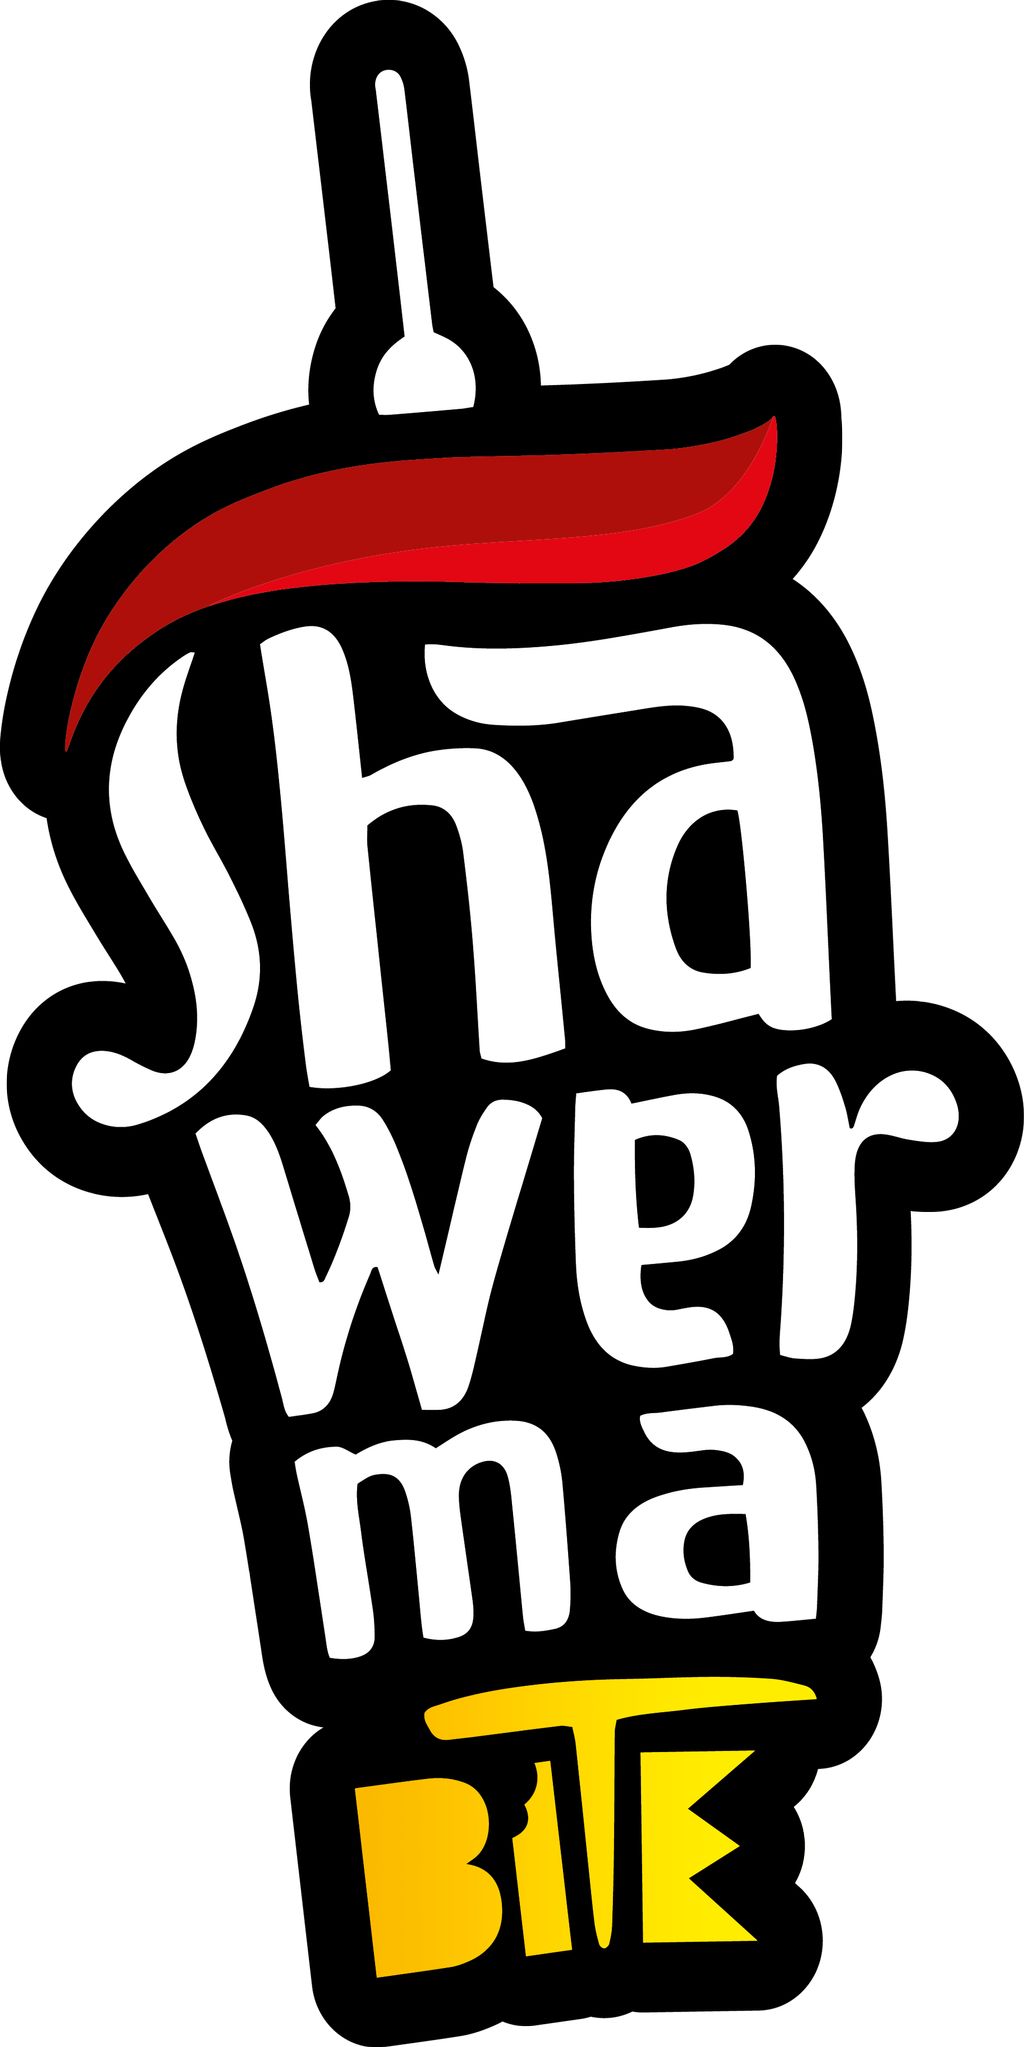 Shawerma Bite